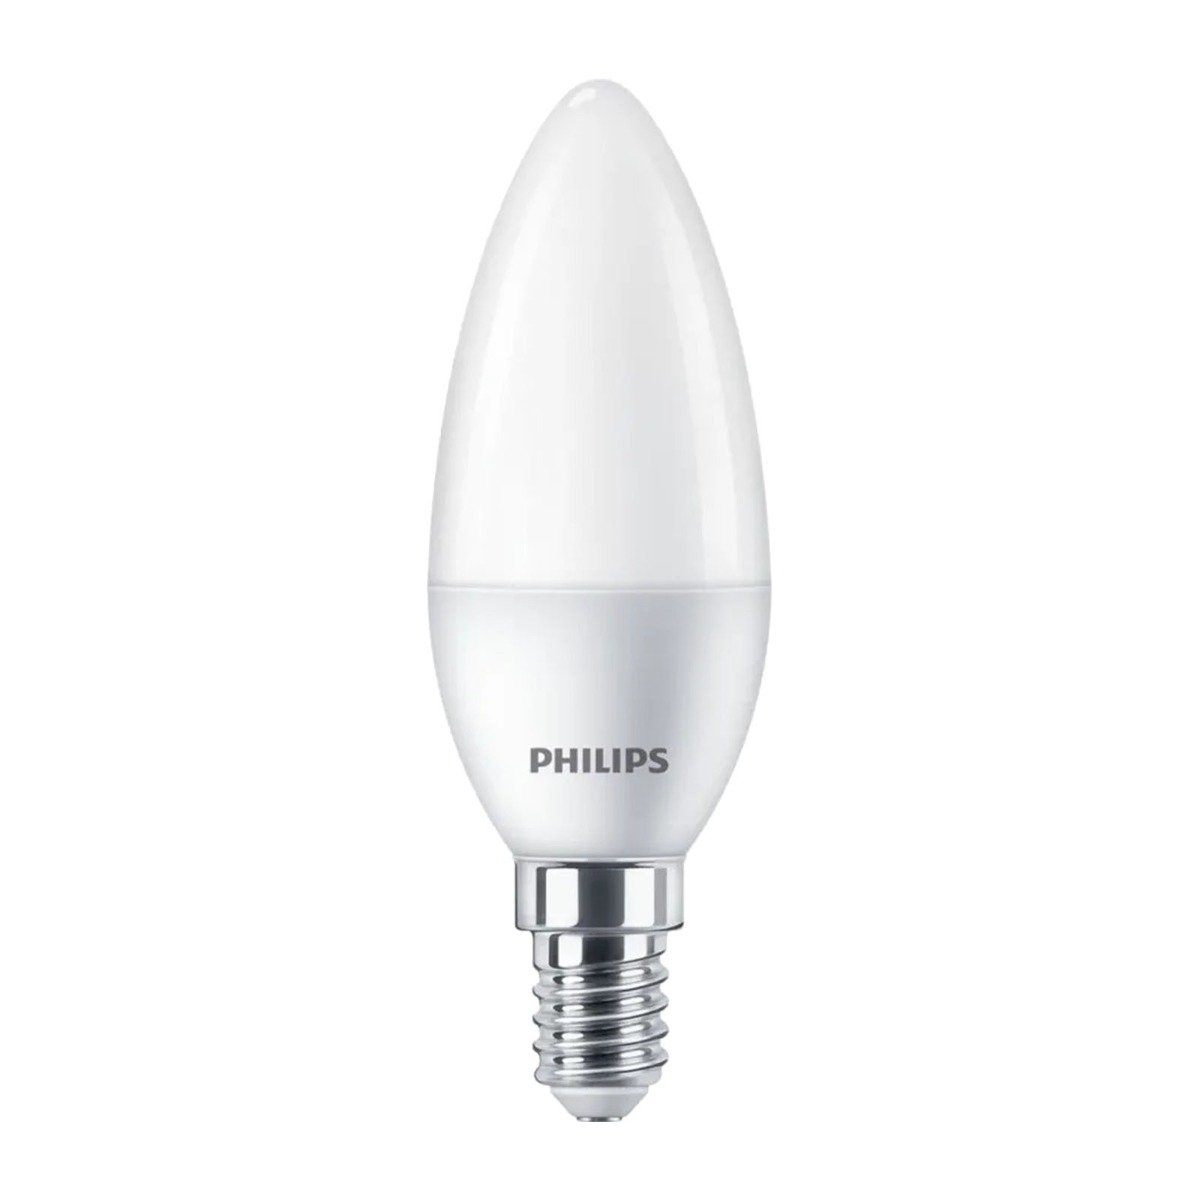 Zdjęcia - Żarówka Philips  LED E14 5W = 40W 470lm 4000K Neutralna ŚWIECA 